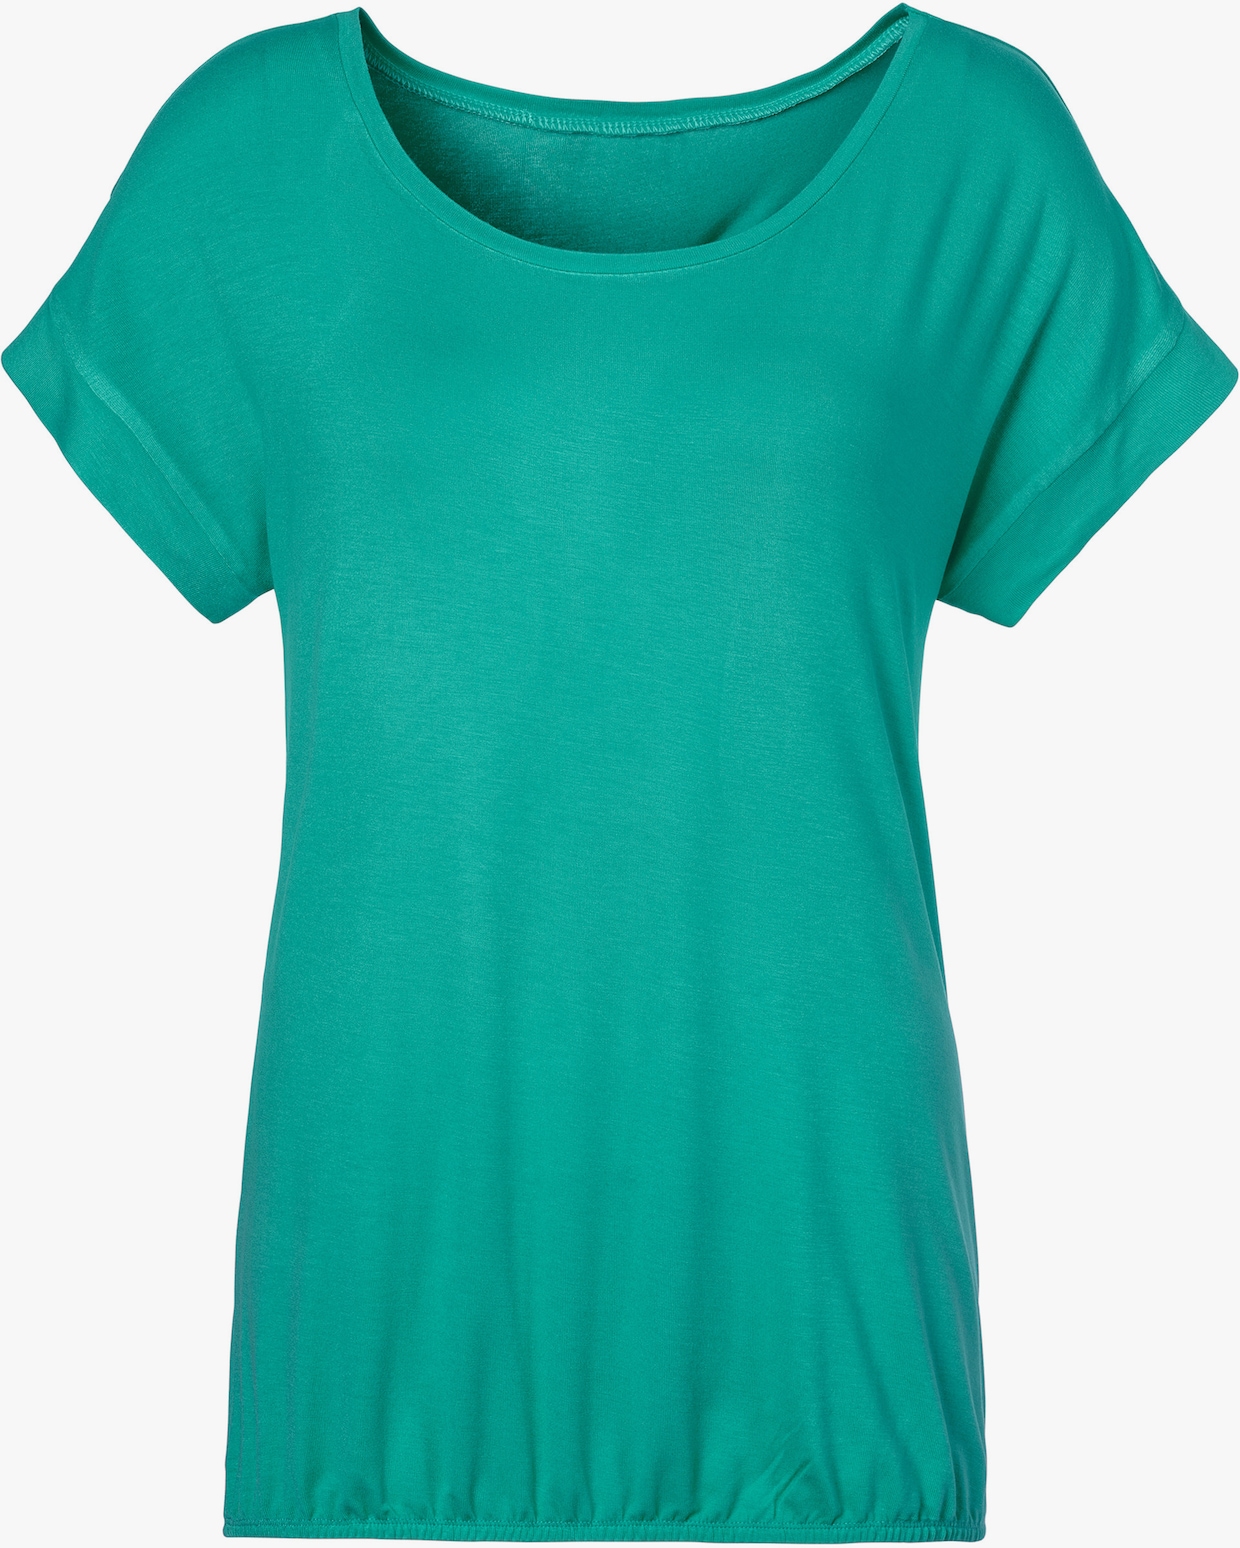 Vivance T-Shirt - grün, schwarz